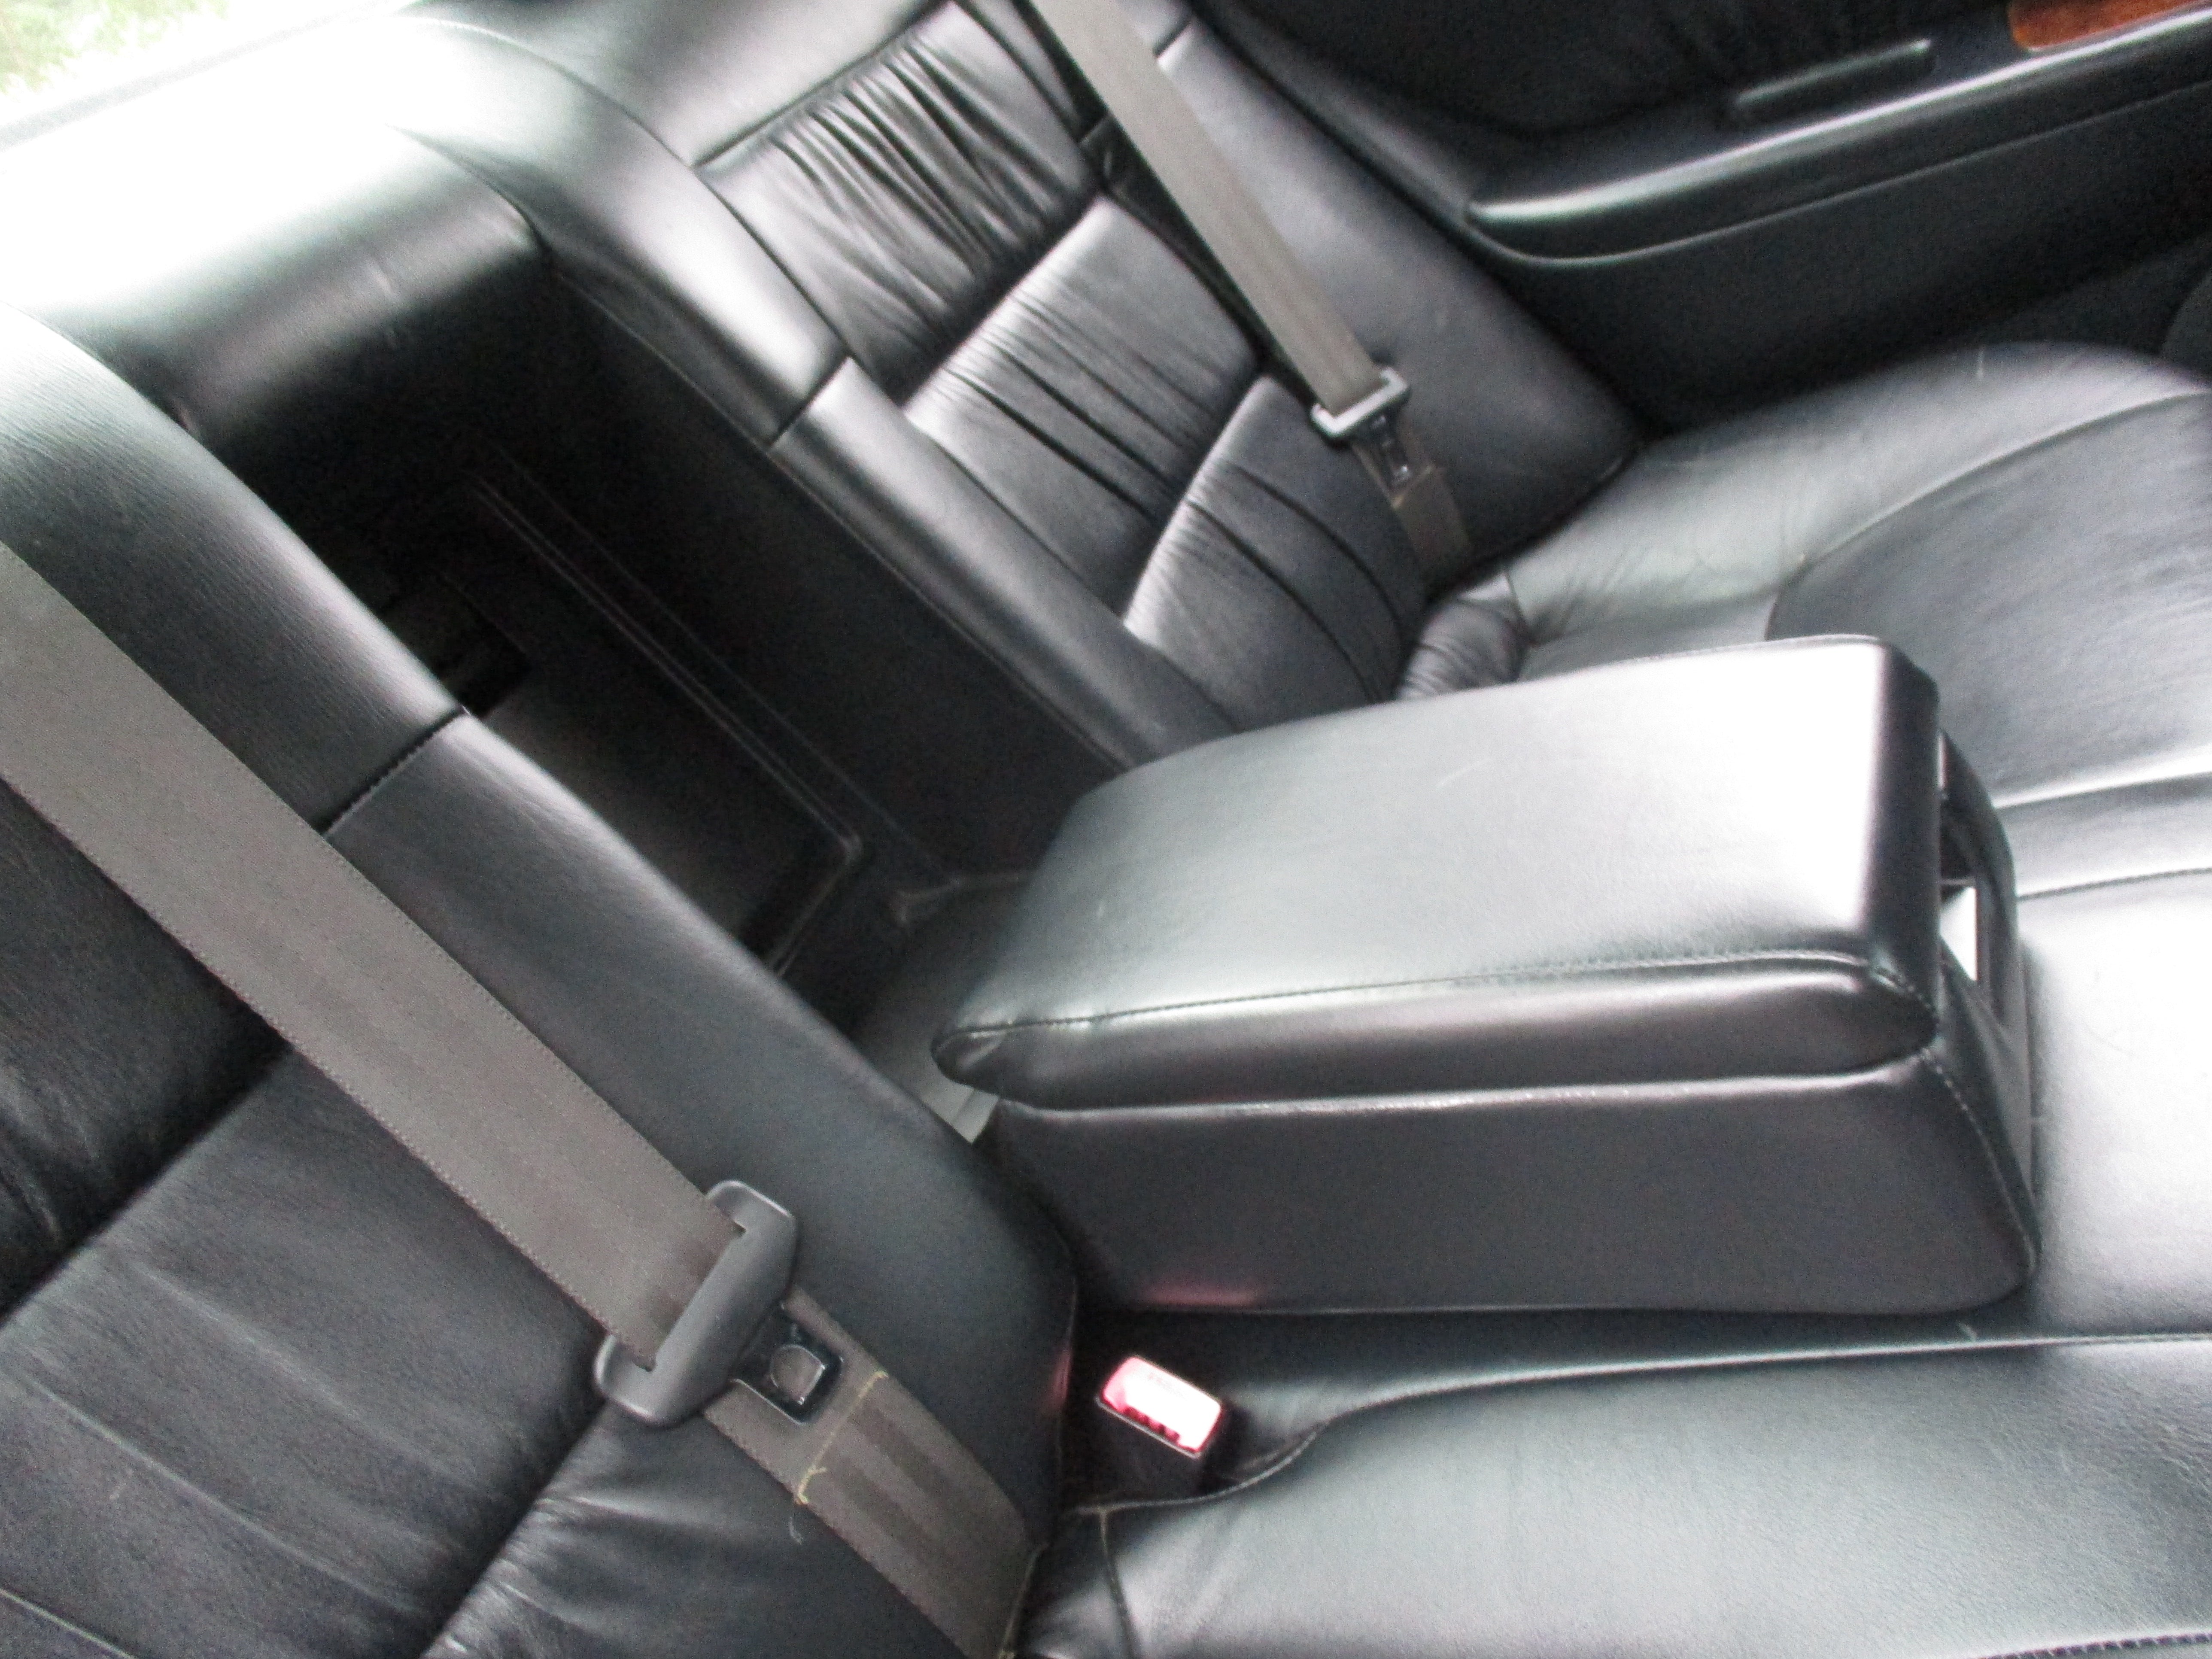 JDM 96 Toyota Windom Couch Edition 3.0G RHD Sedan